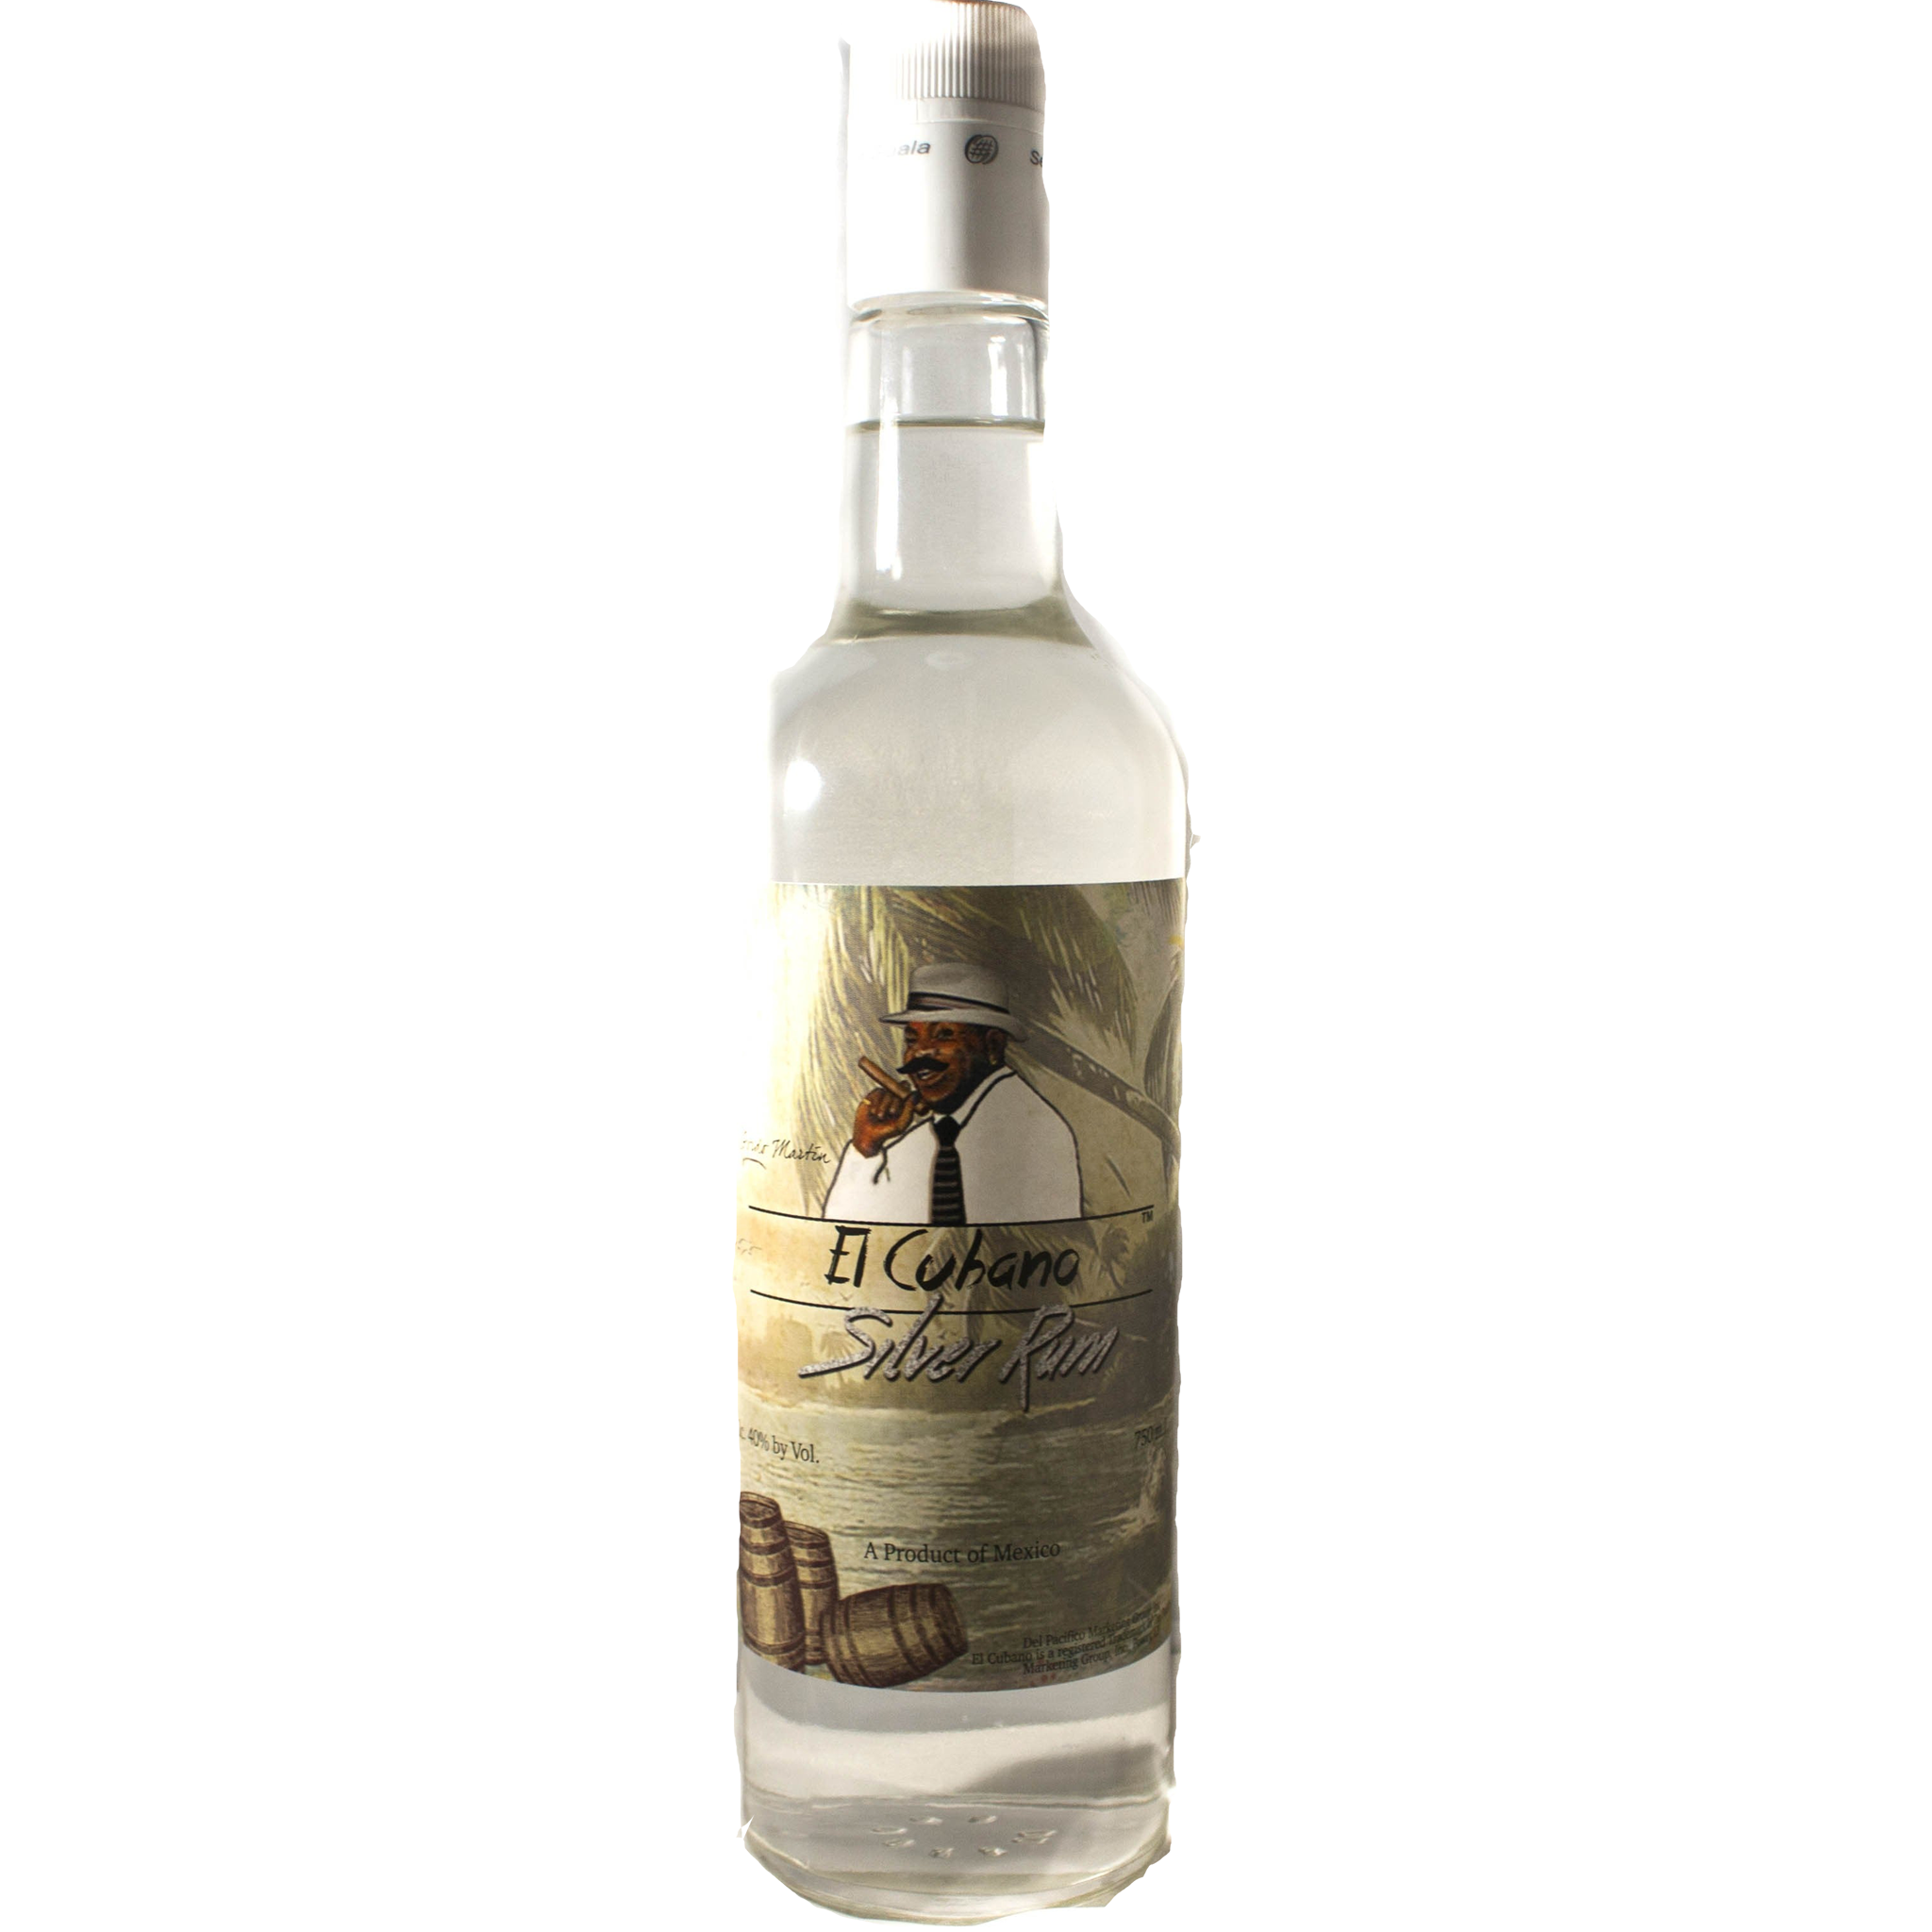 El Cubano Silver Rum